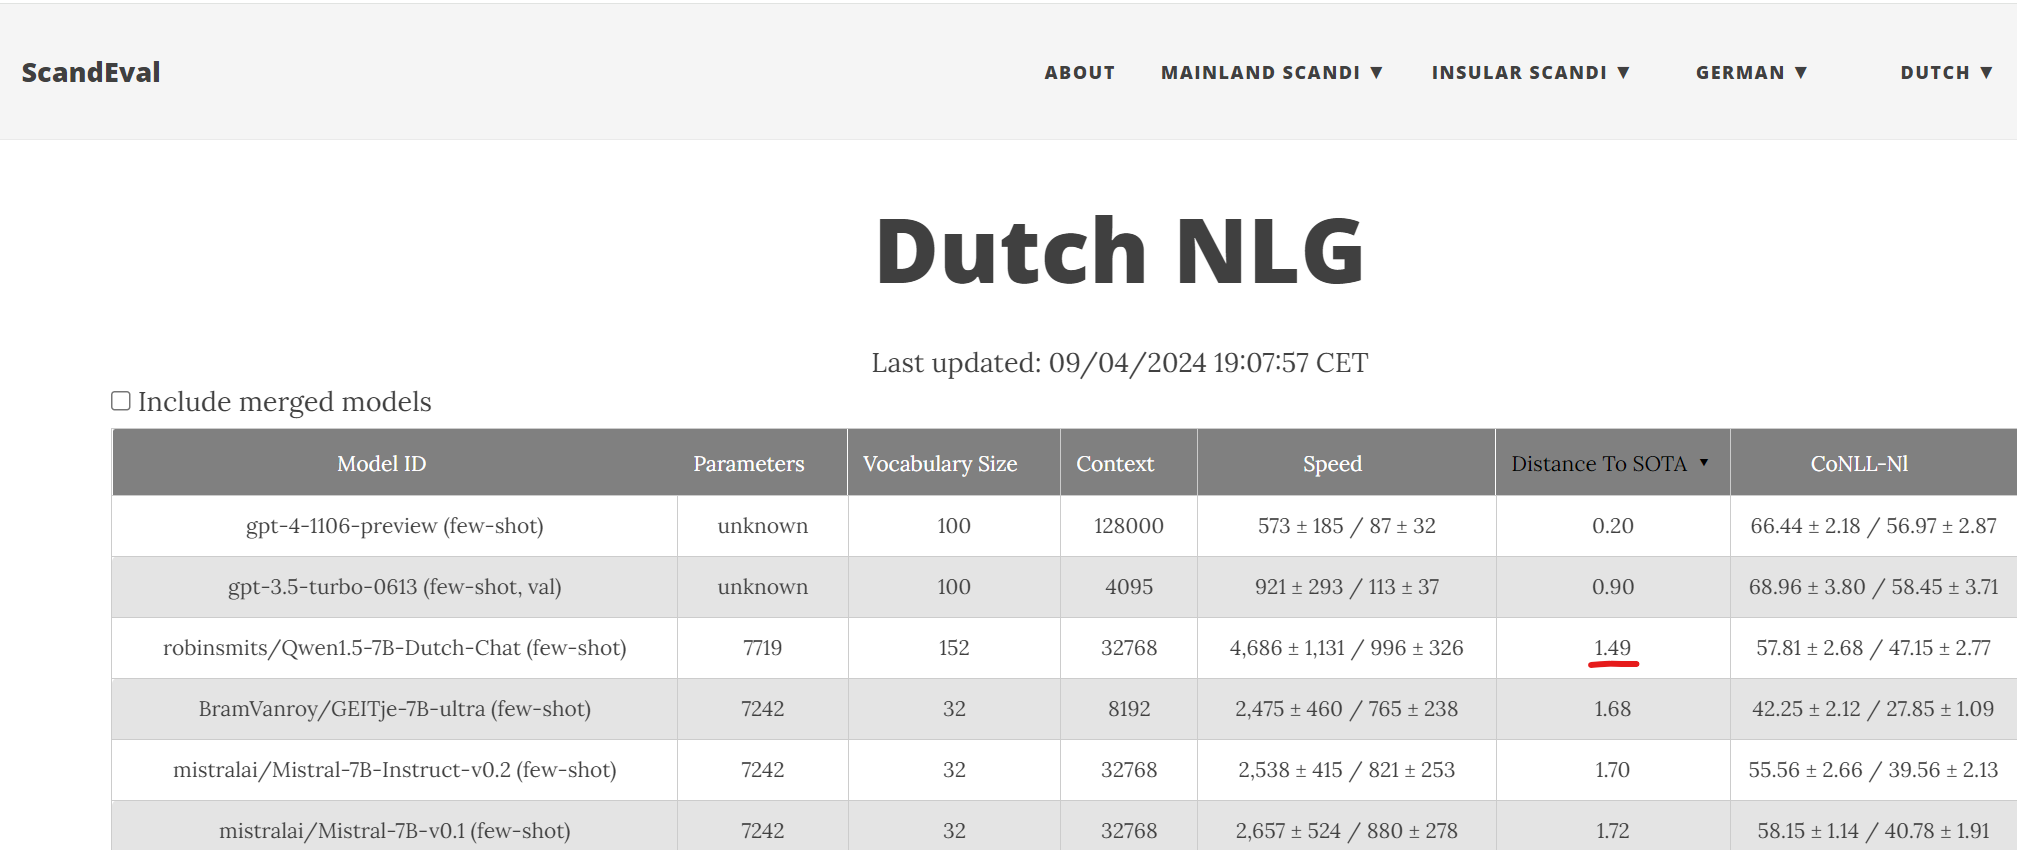 ScandEval Dutch NLG Leaderboard Score